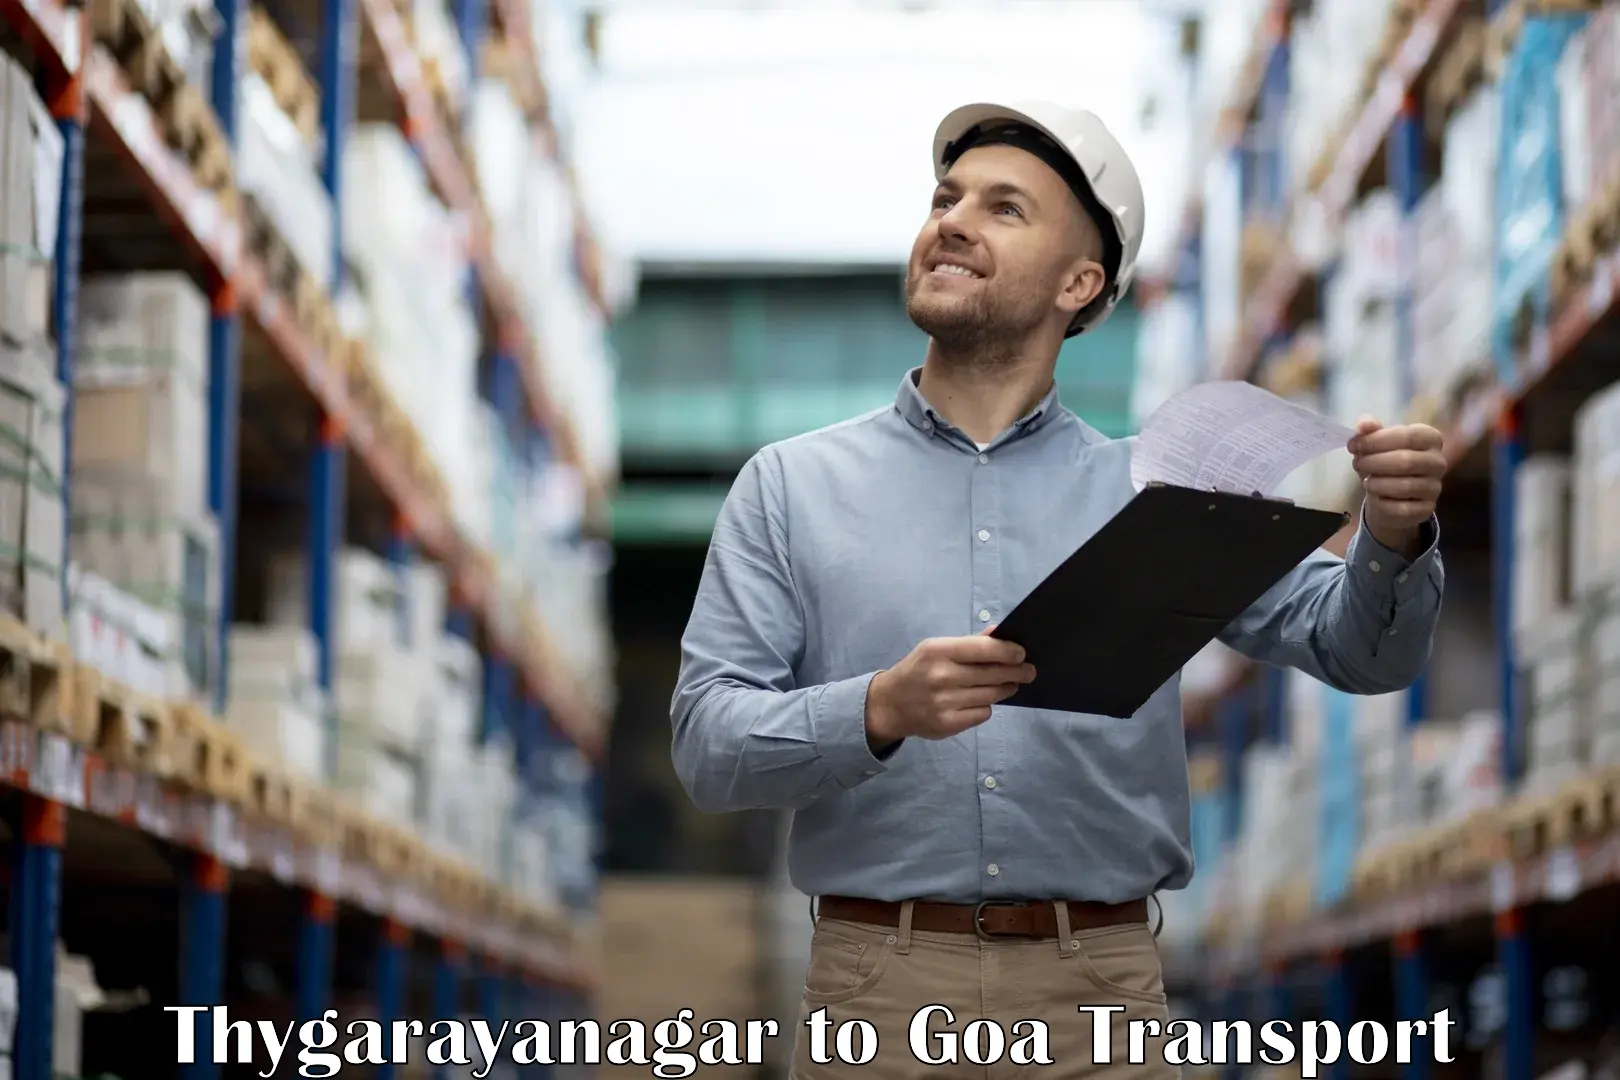 Nationwide transport services Thygarayanagar to IIT Goa